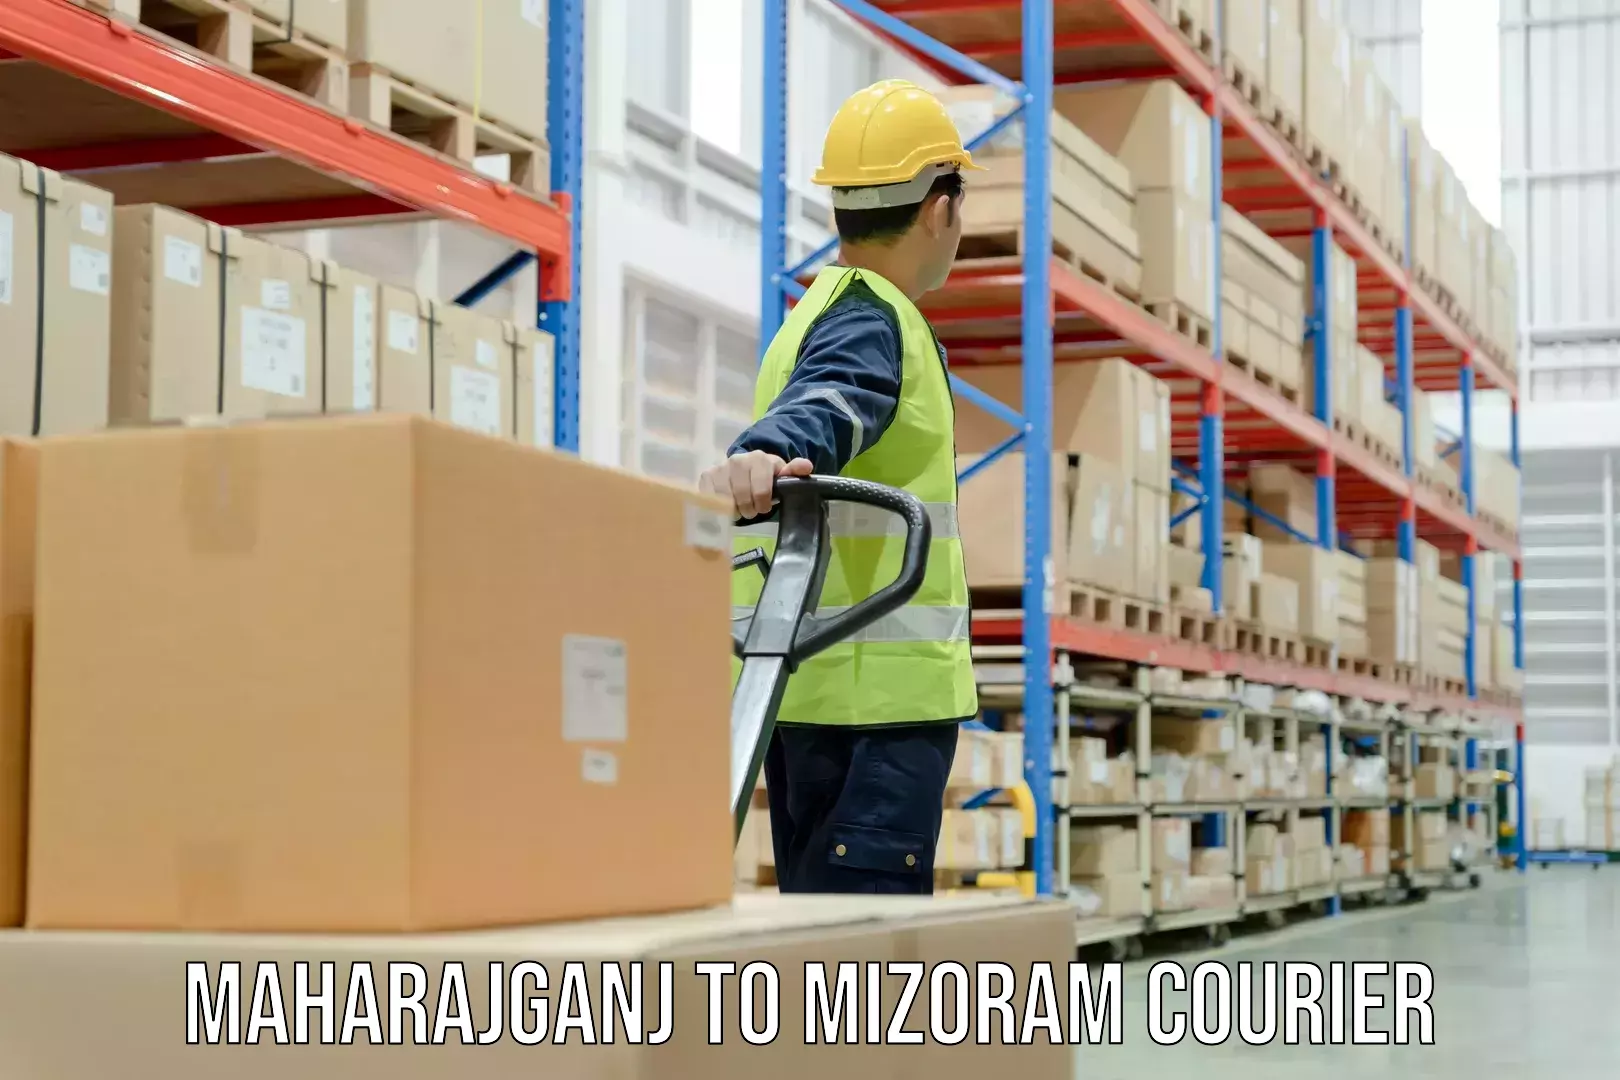 Global freight services Maharajganj to Mizoram